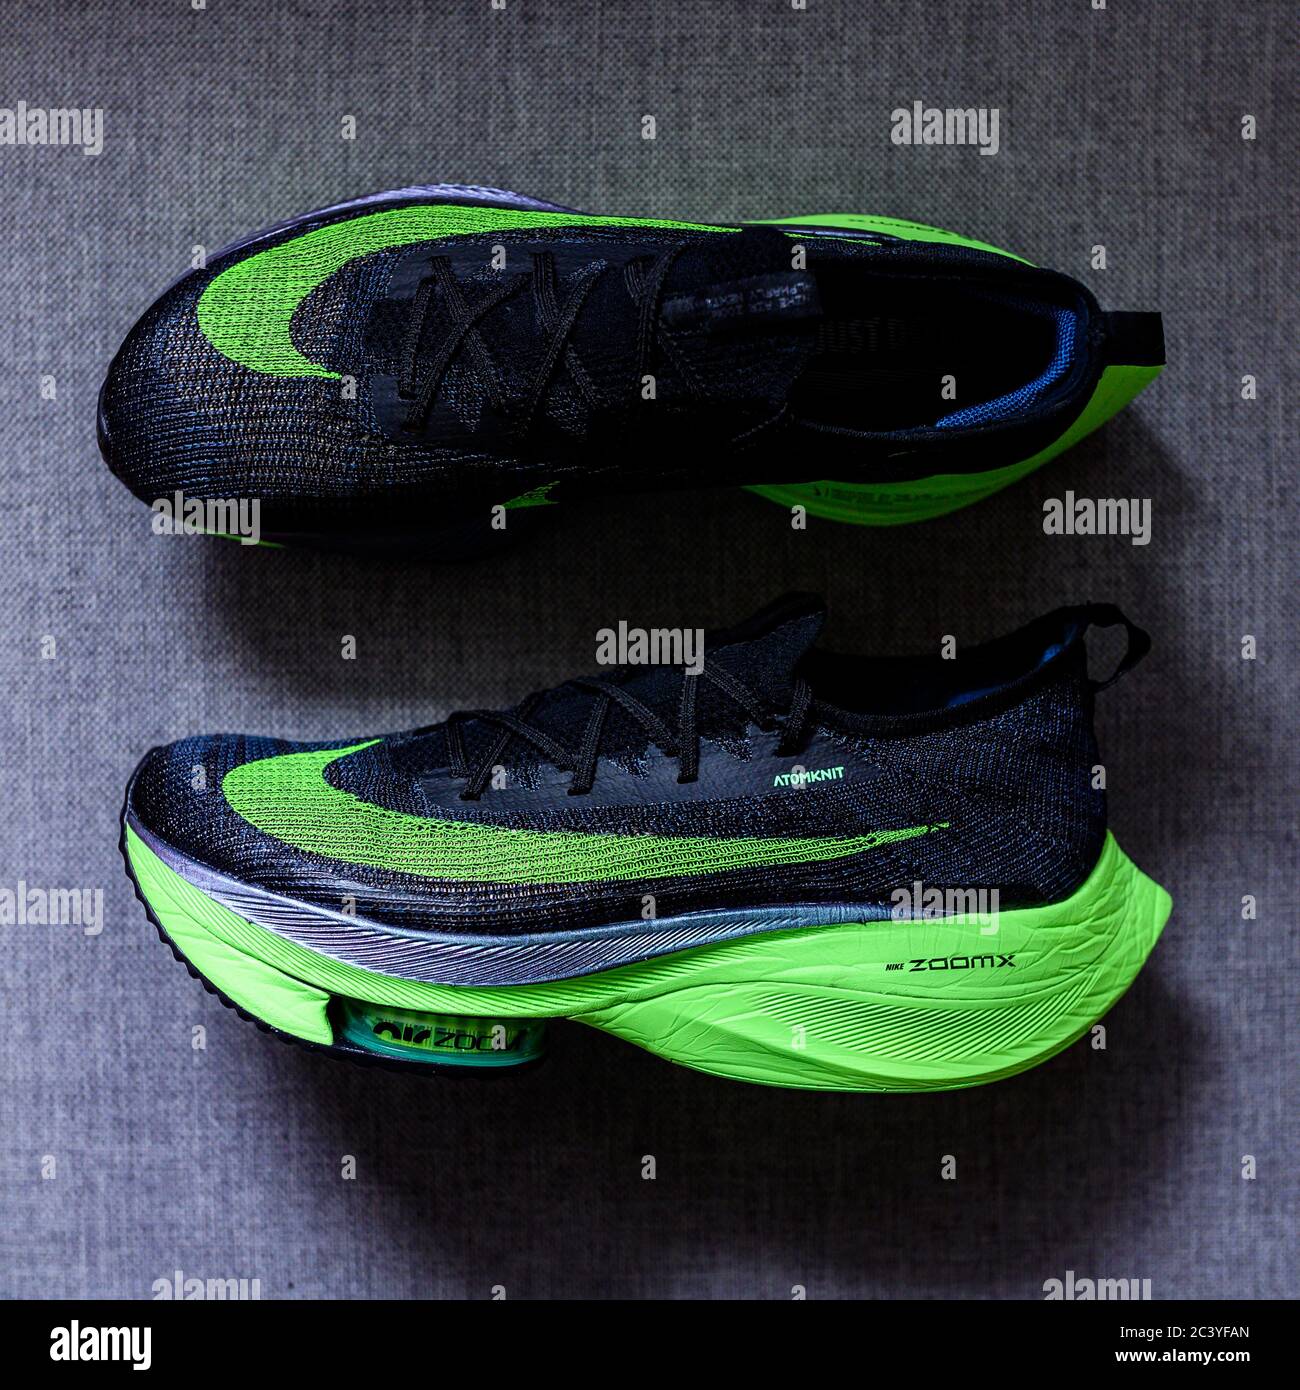 ROMA, ITALIA, JUNIO DE 23. 2020: Zapatillas de running Nike ALPHAFLY NEXT%.  Polémico verde, negro atletismo zapatillas maratón. Detalle de la espuma Air  Zoomx, Zoom Air Fotografía de stock - Alamy